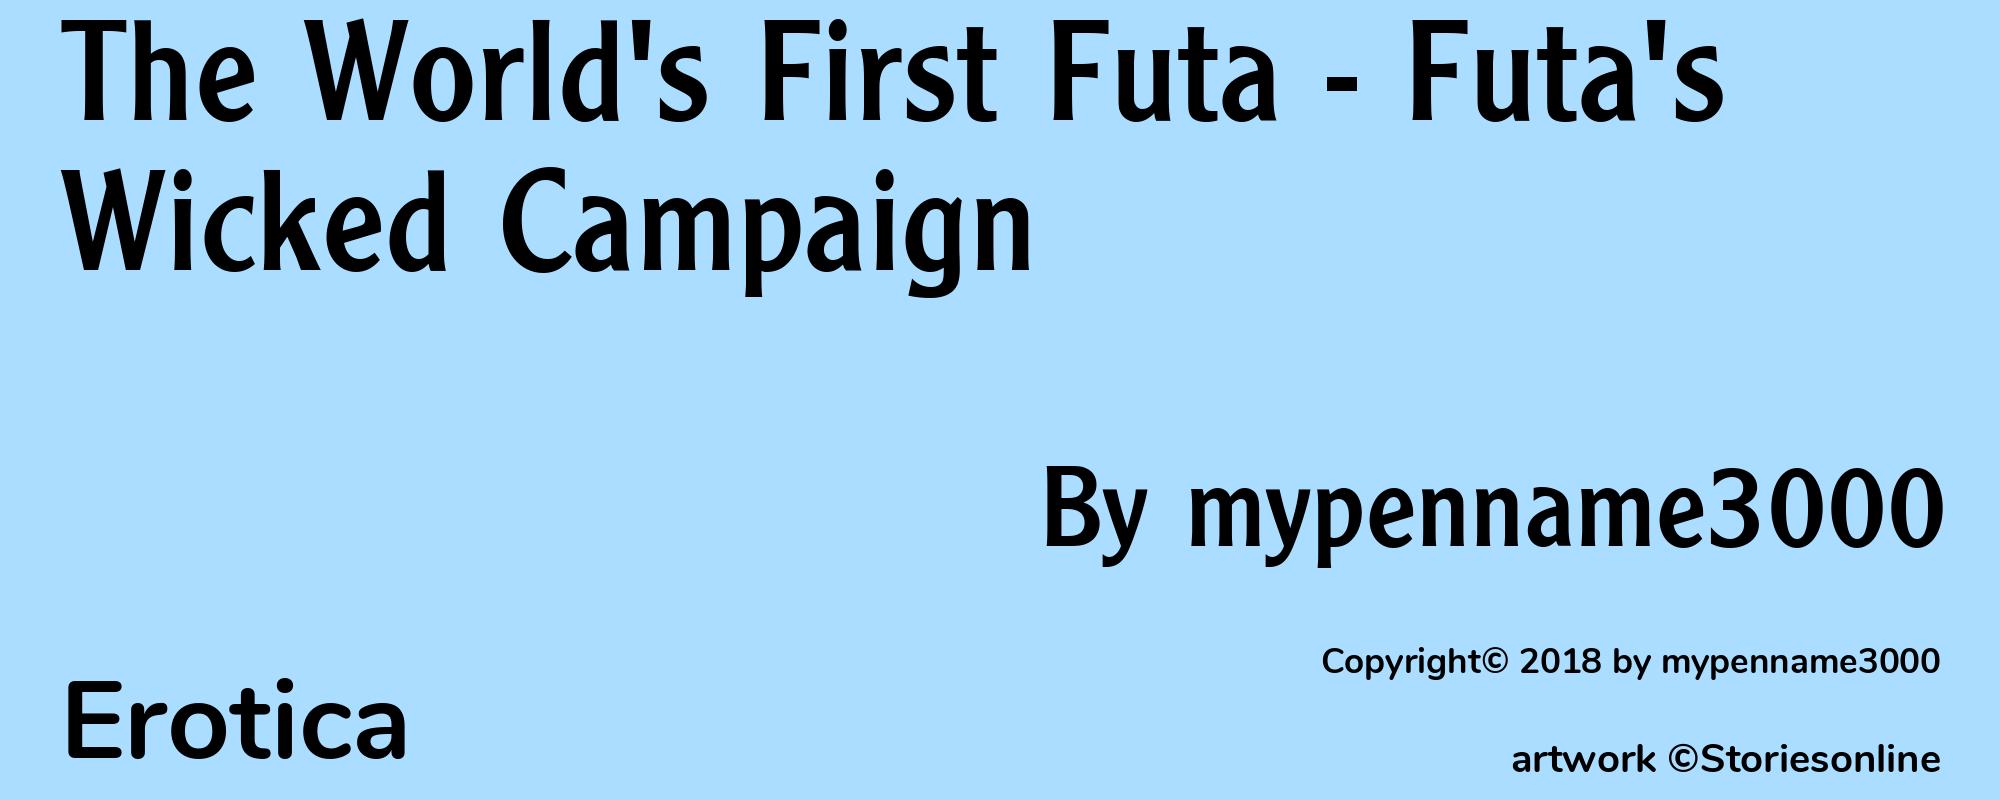 The World's First Futa - Futa's Wicked Campaign - Cover